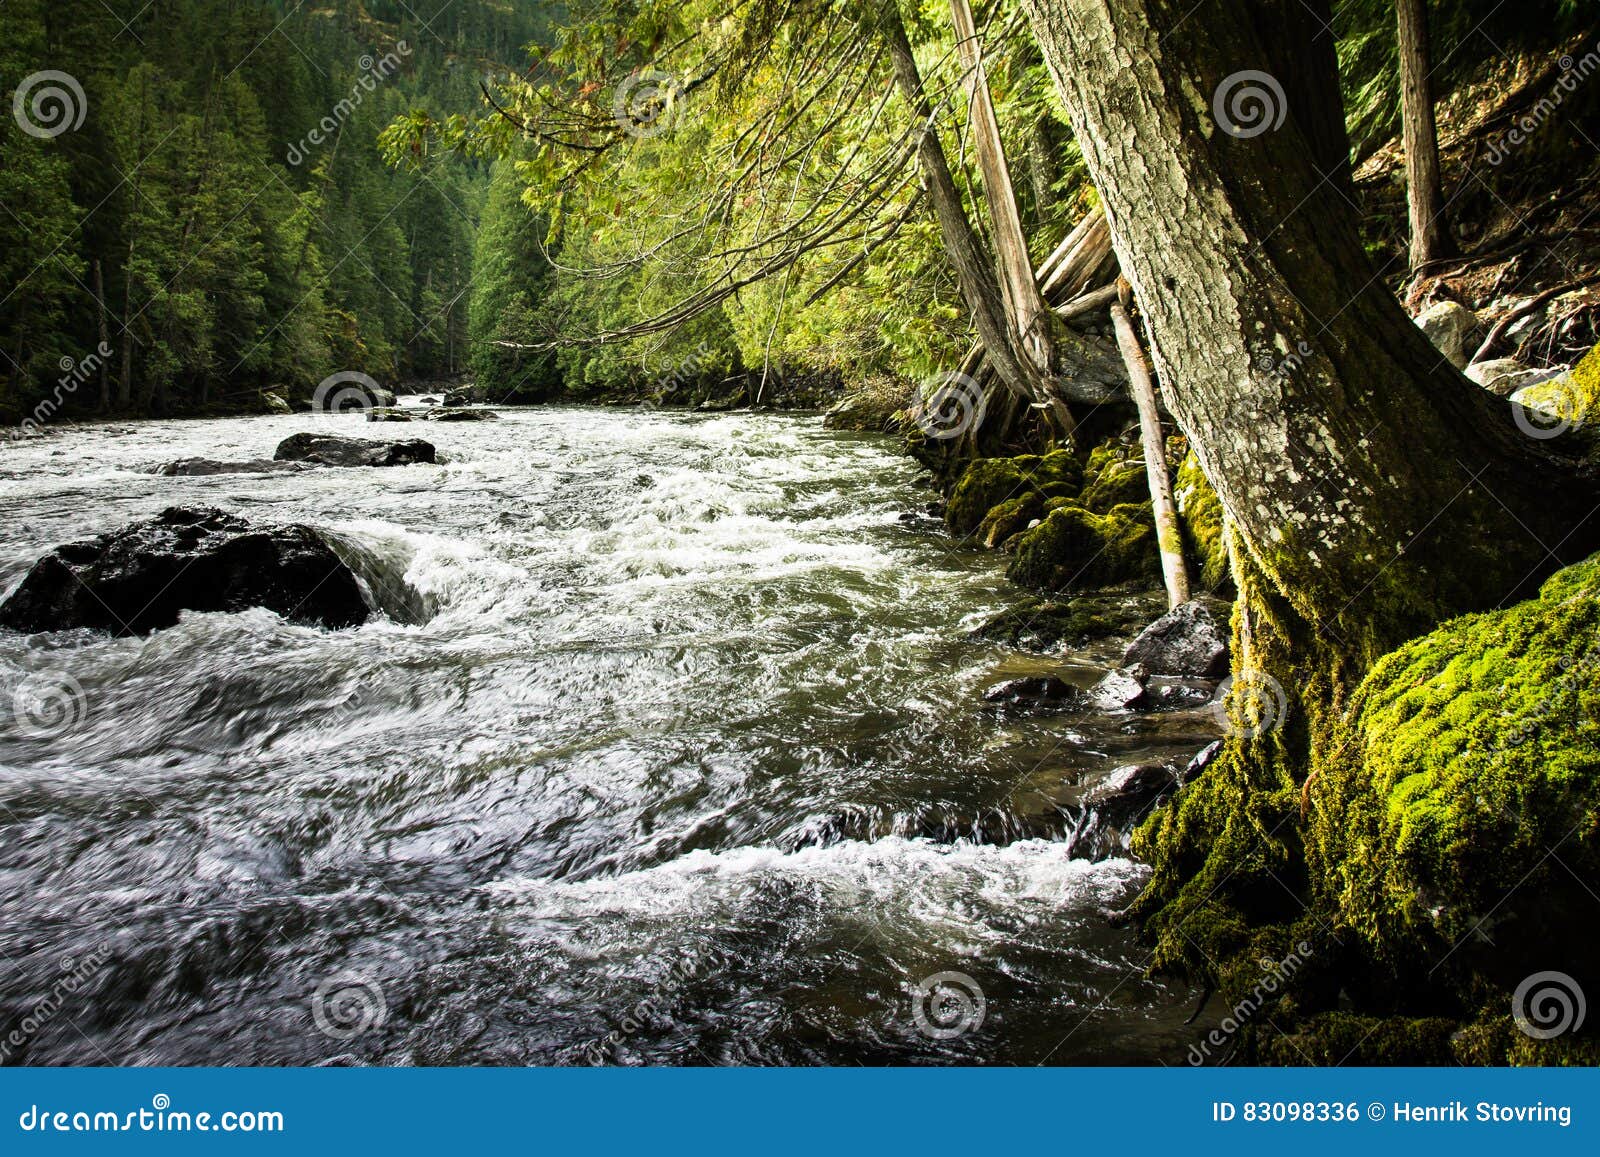 stream at nairn falls, canada